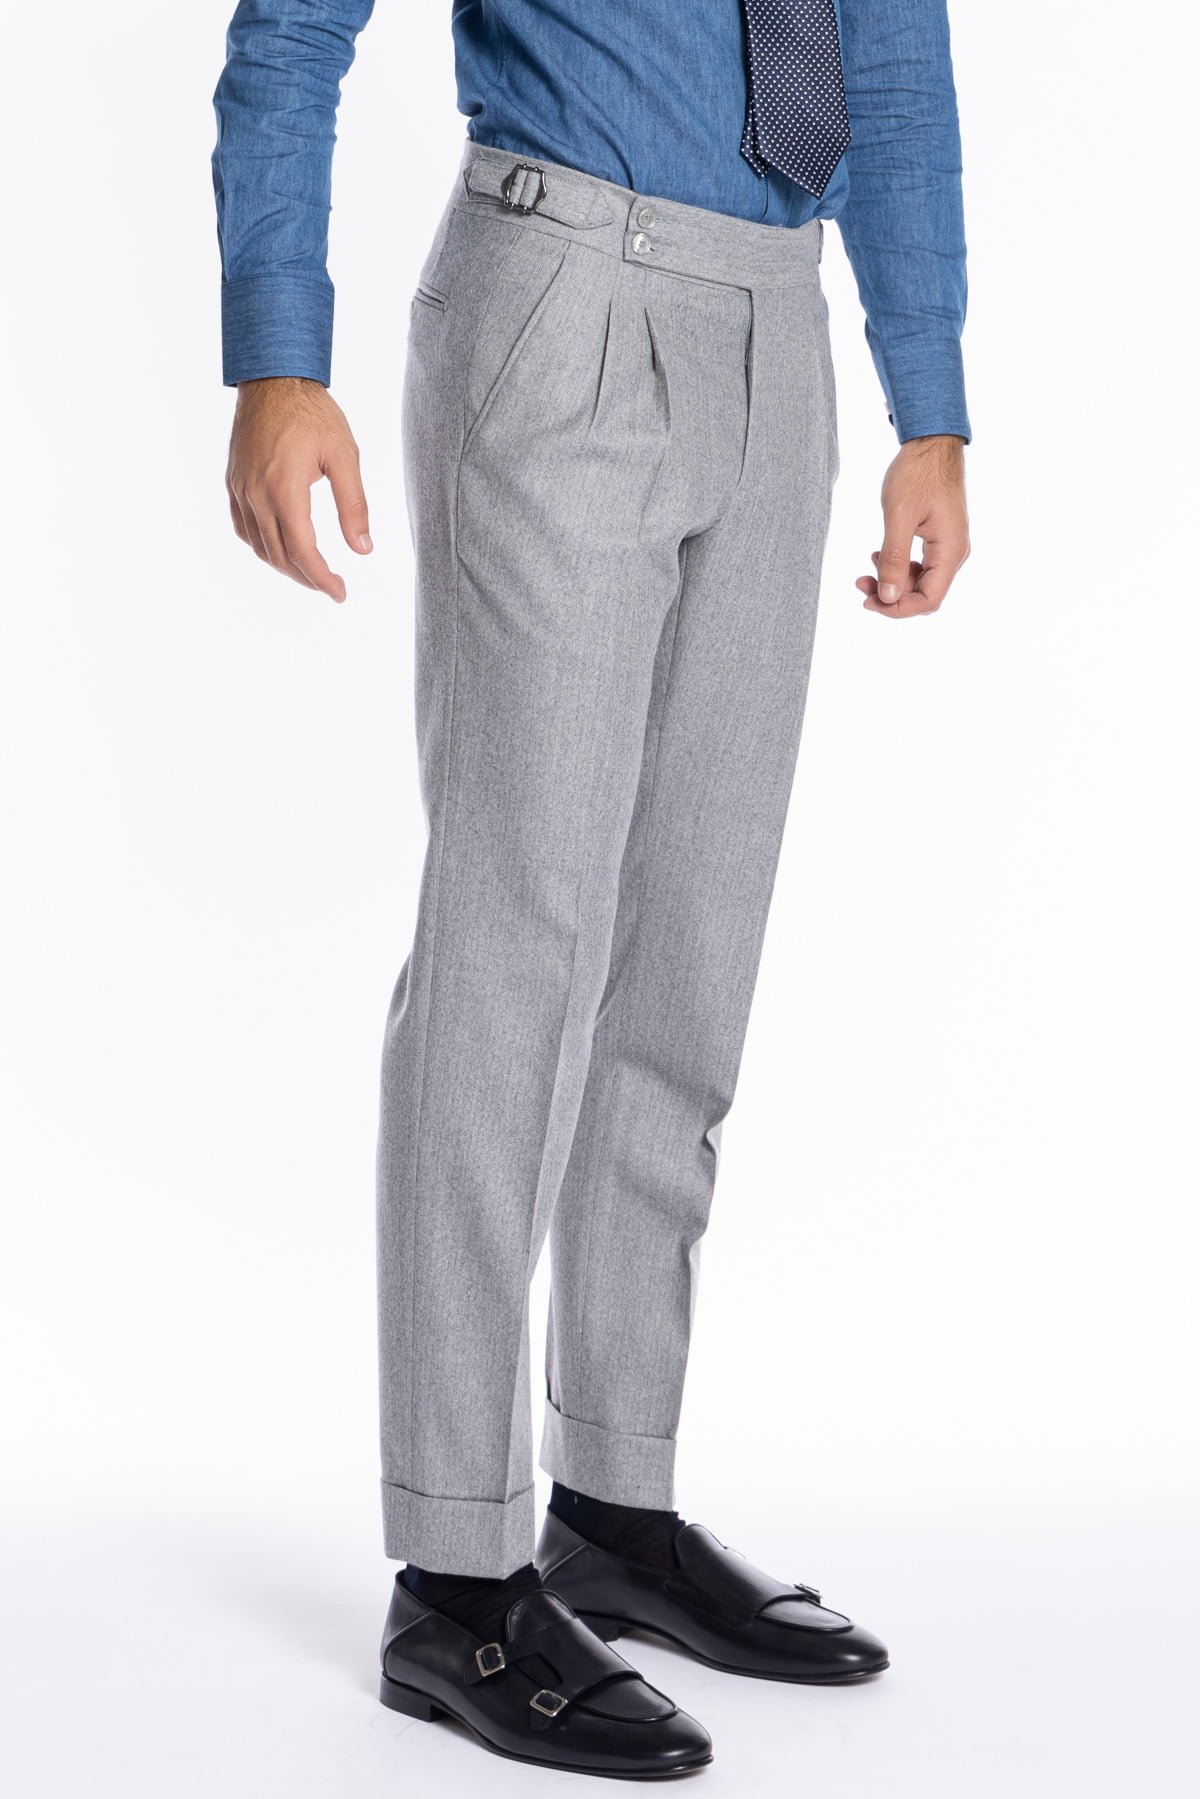 Pantalone uomo grigio spigato vita alta tasca america in lana flanella Holland & Sherry con doppia pinces e fibbie laterali regolabili